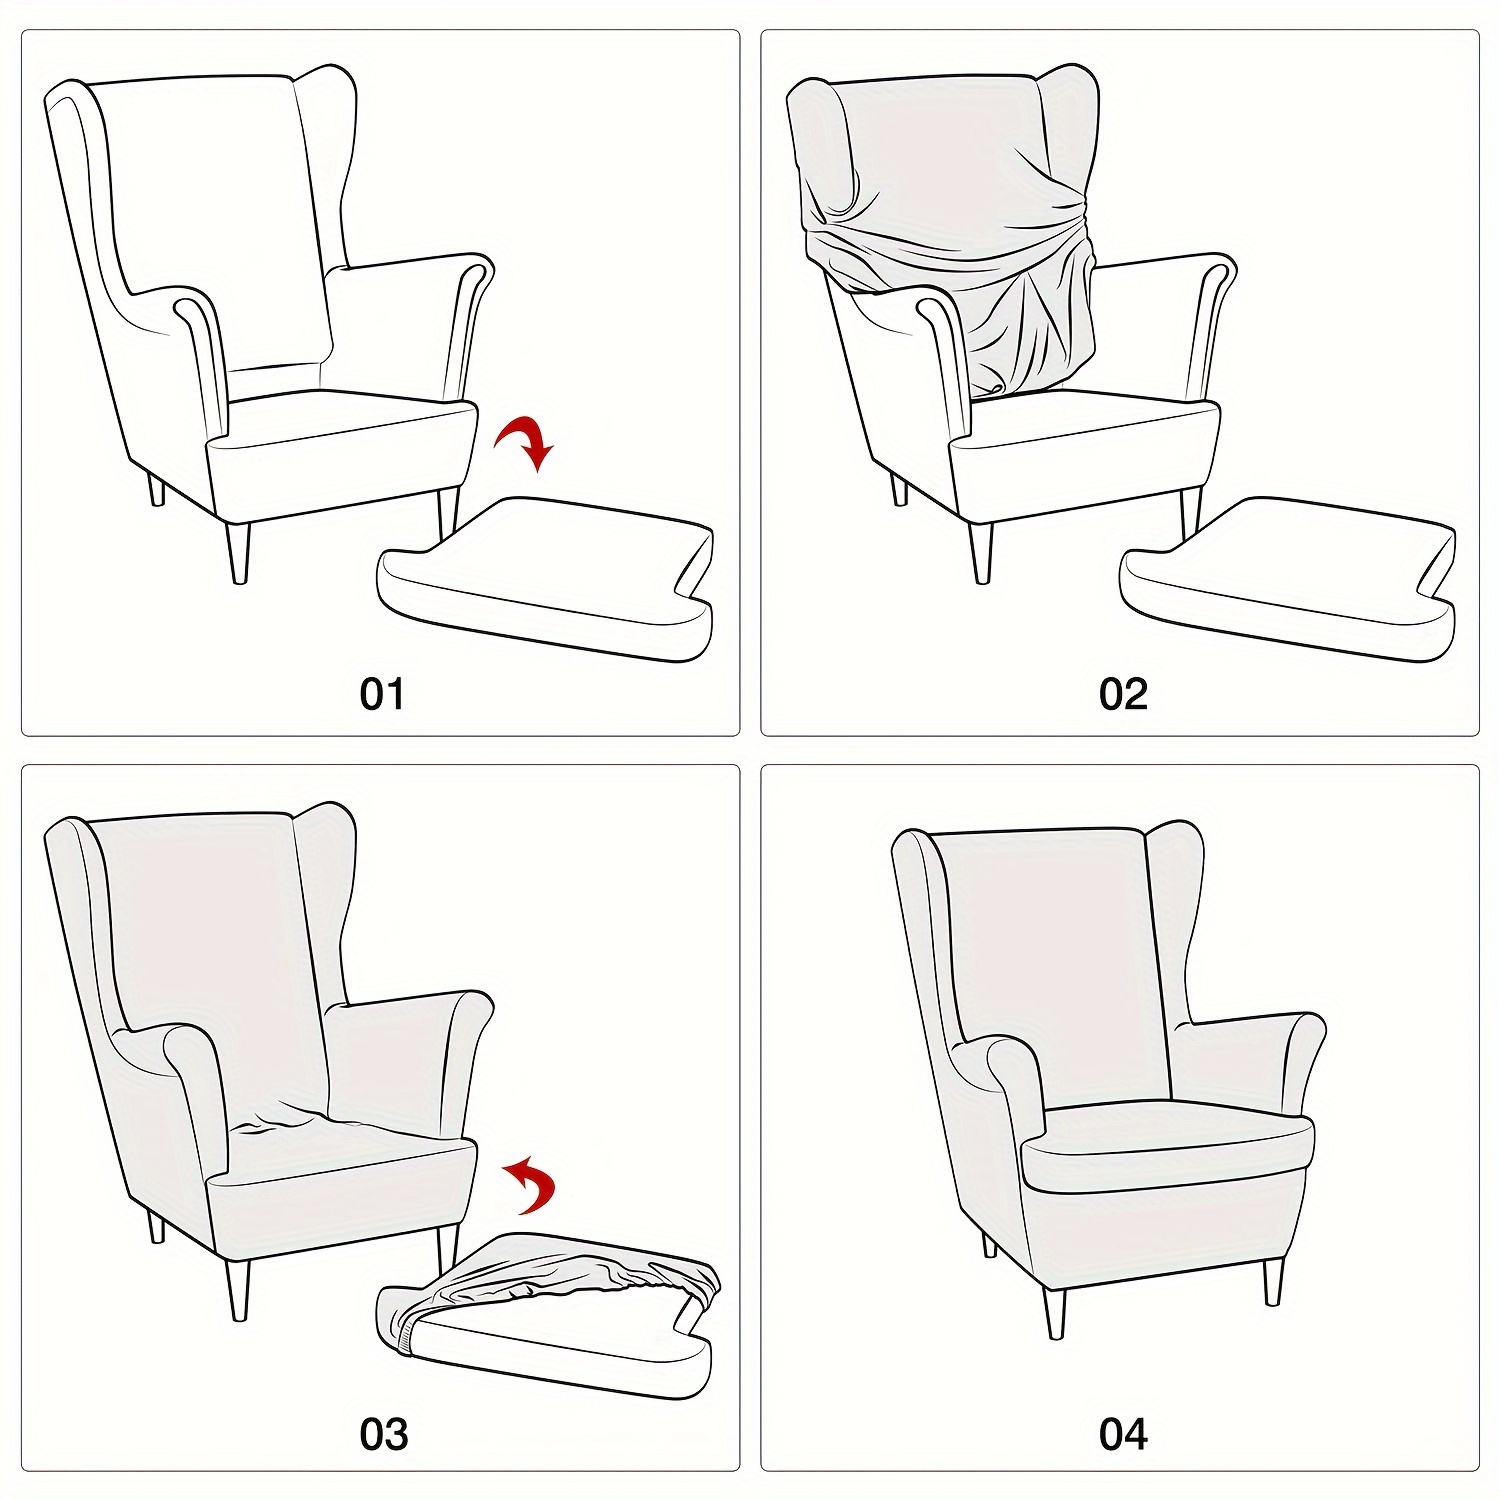 Cojines para sillas con respaldo alto 2 uds tela turquesa